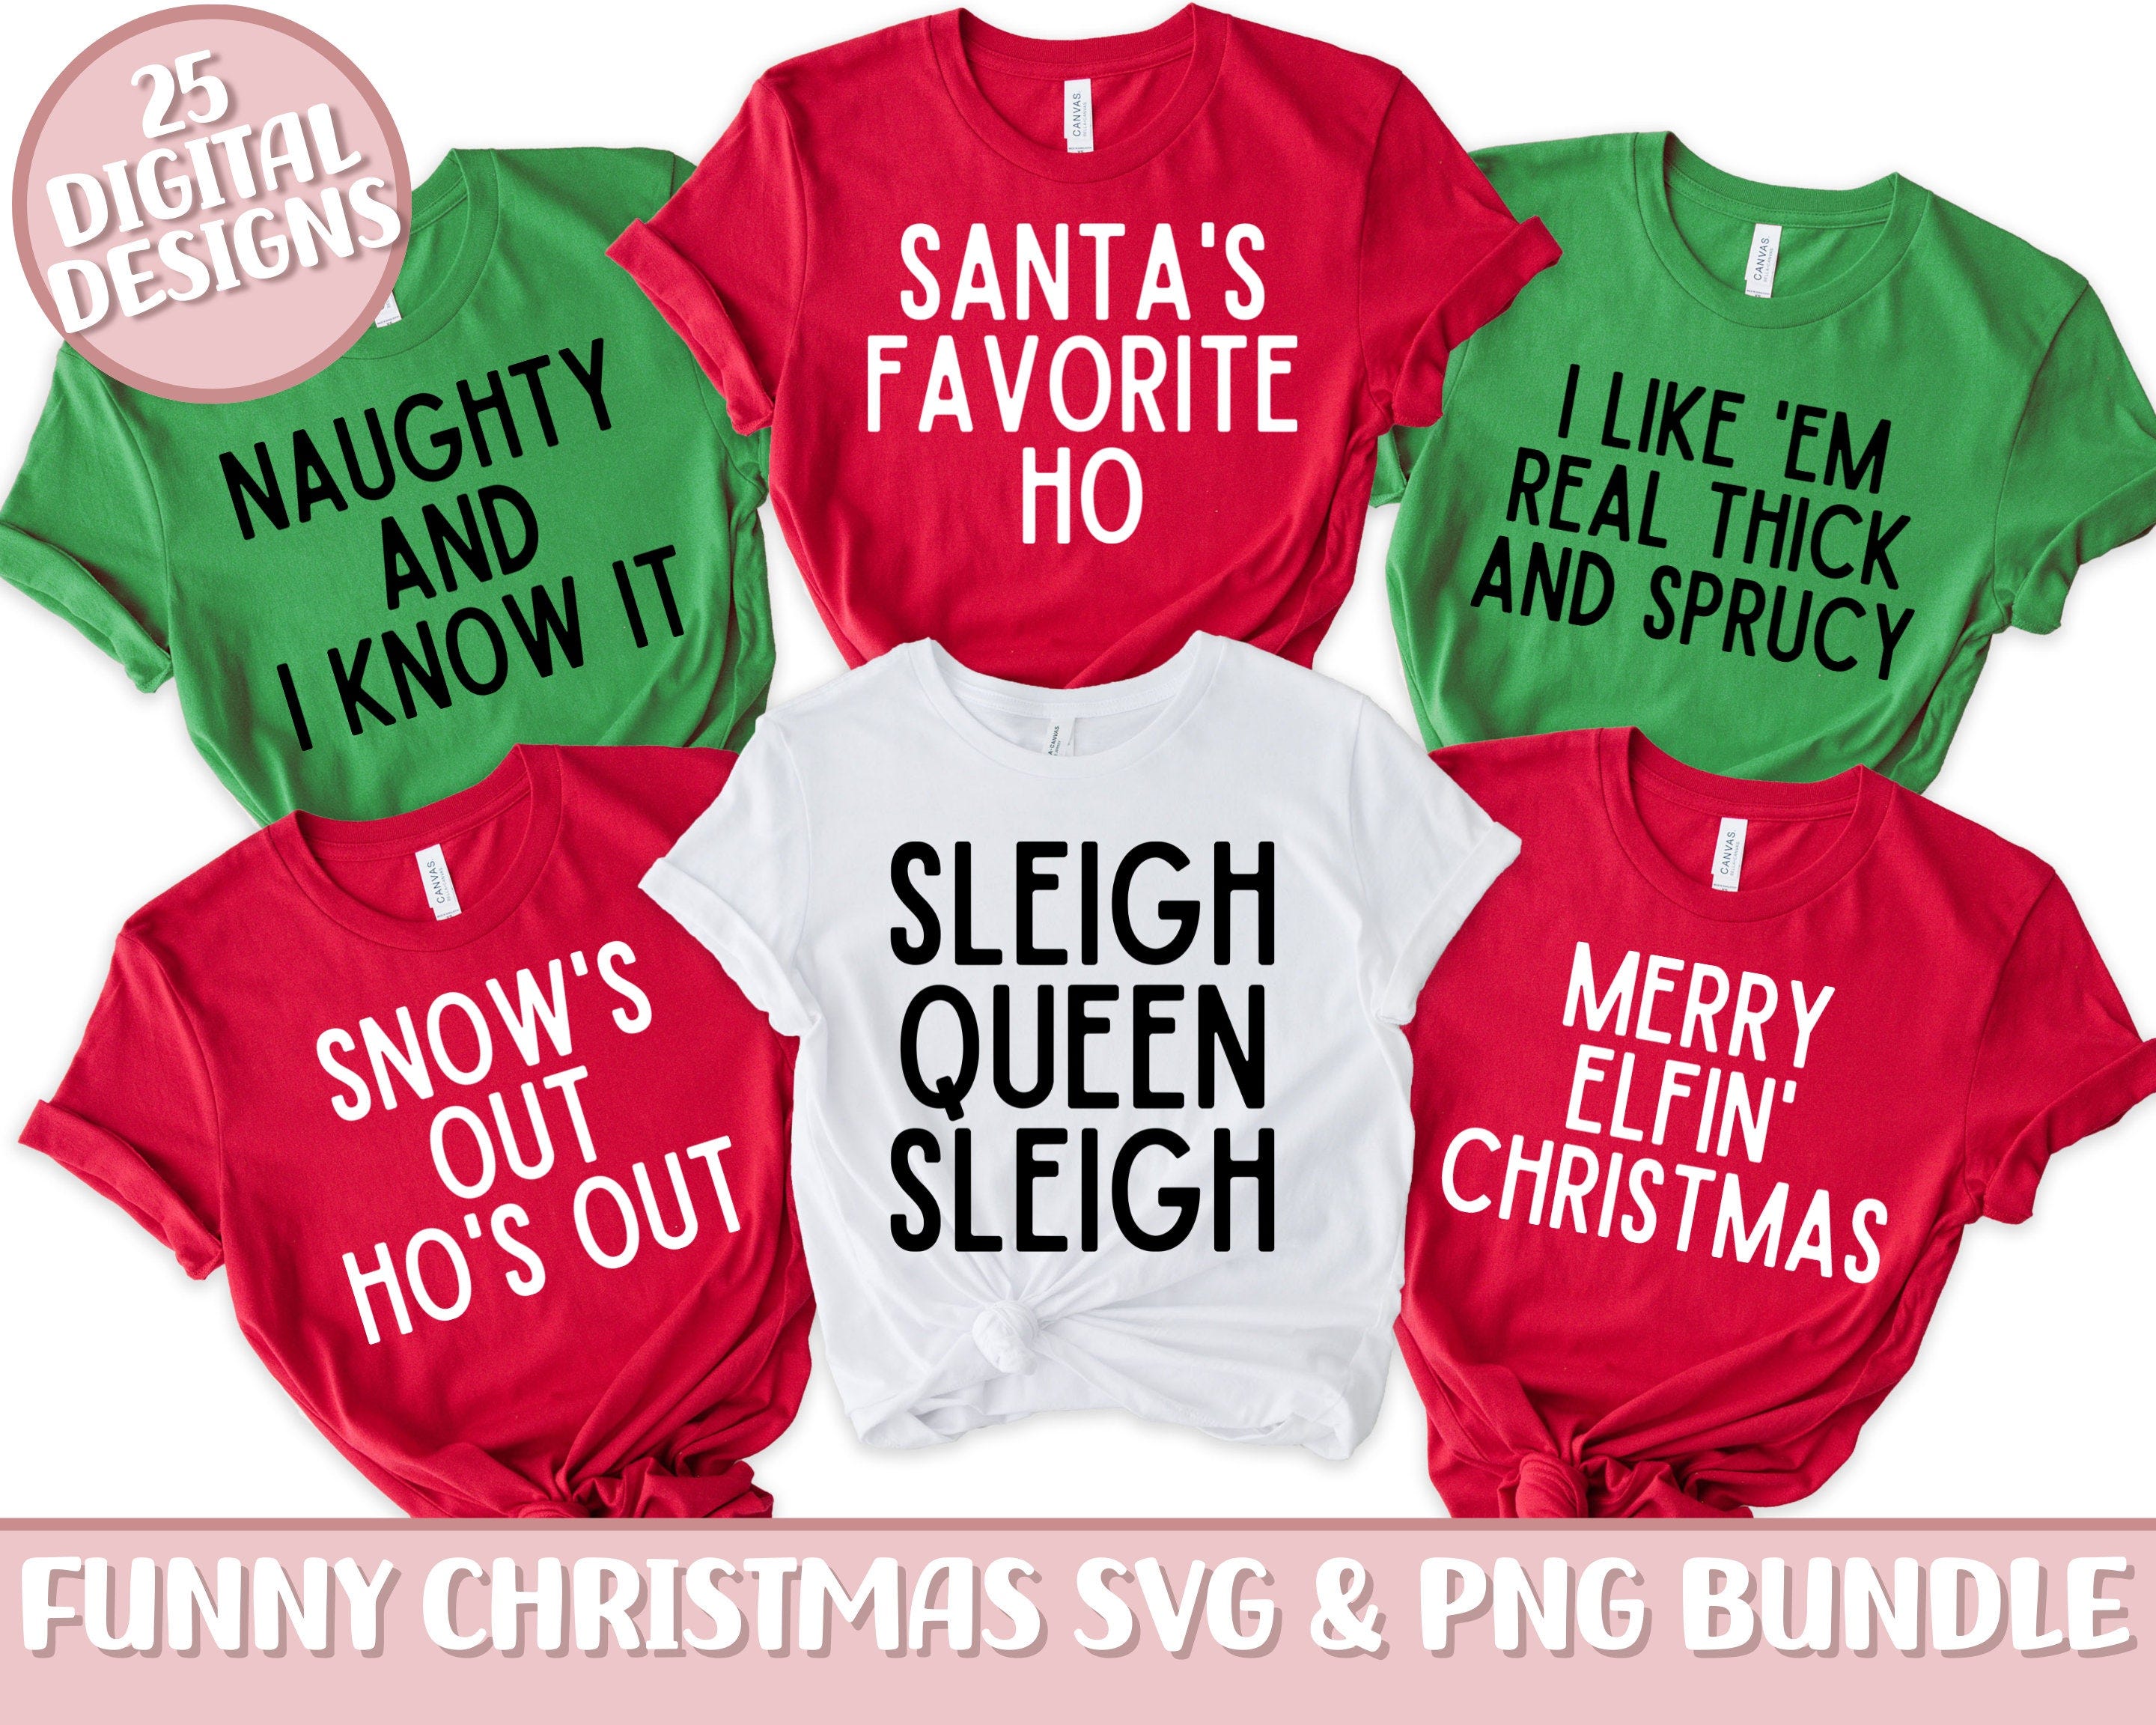 Family Christmas SVG & PNG Bundle, Christmas Puns SVG Bundle, Funny Christmas Bundle Svg, Christmas Group Shirts, Christmas Party Shirts Svg